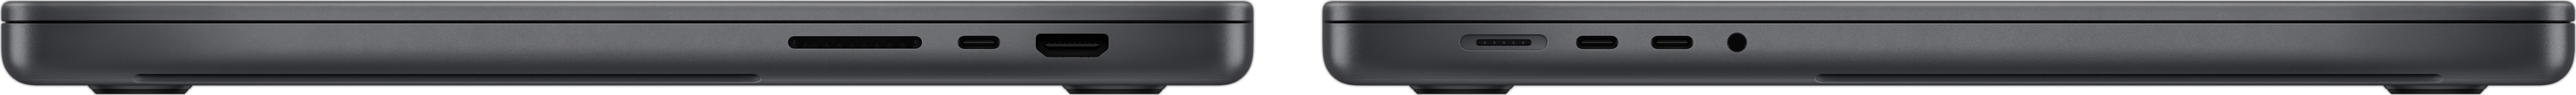 MacBook Pro’nun, SDXC kart yuvası, üç adet Thunderbolt 4 bağlantı noktası, HDMI bağlantı noktası, MagSafe 3 şarj bağlantı noktası ve kulaklık jakını gösteren yandan görünümü.